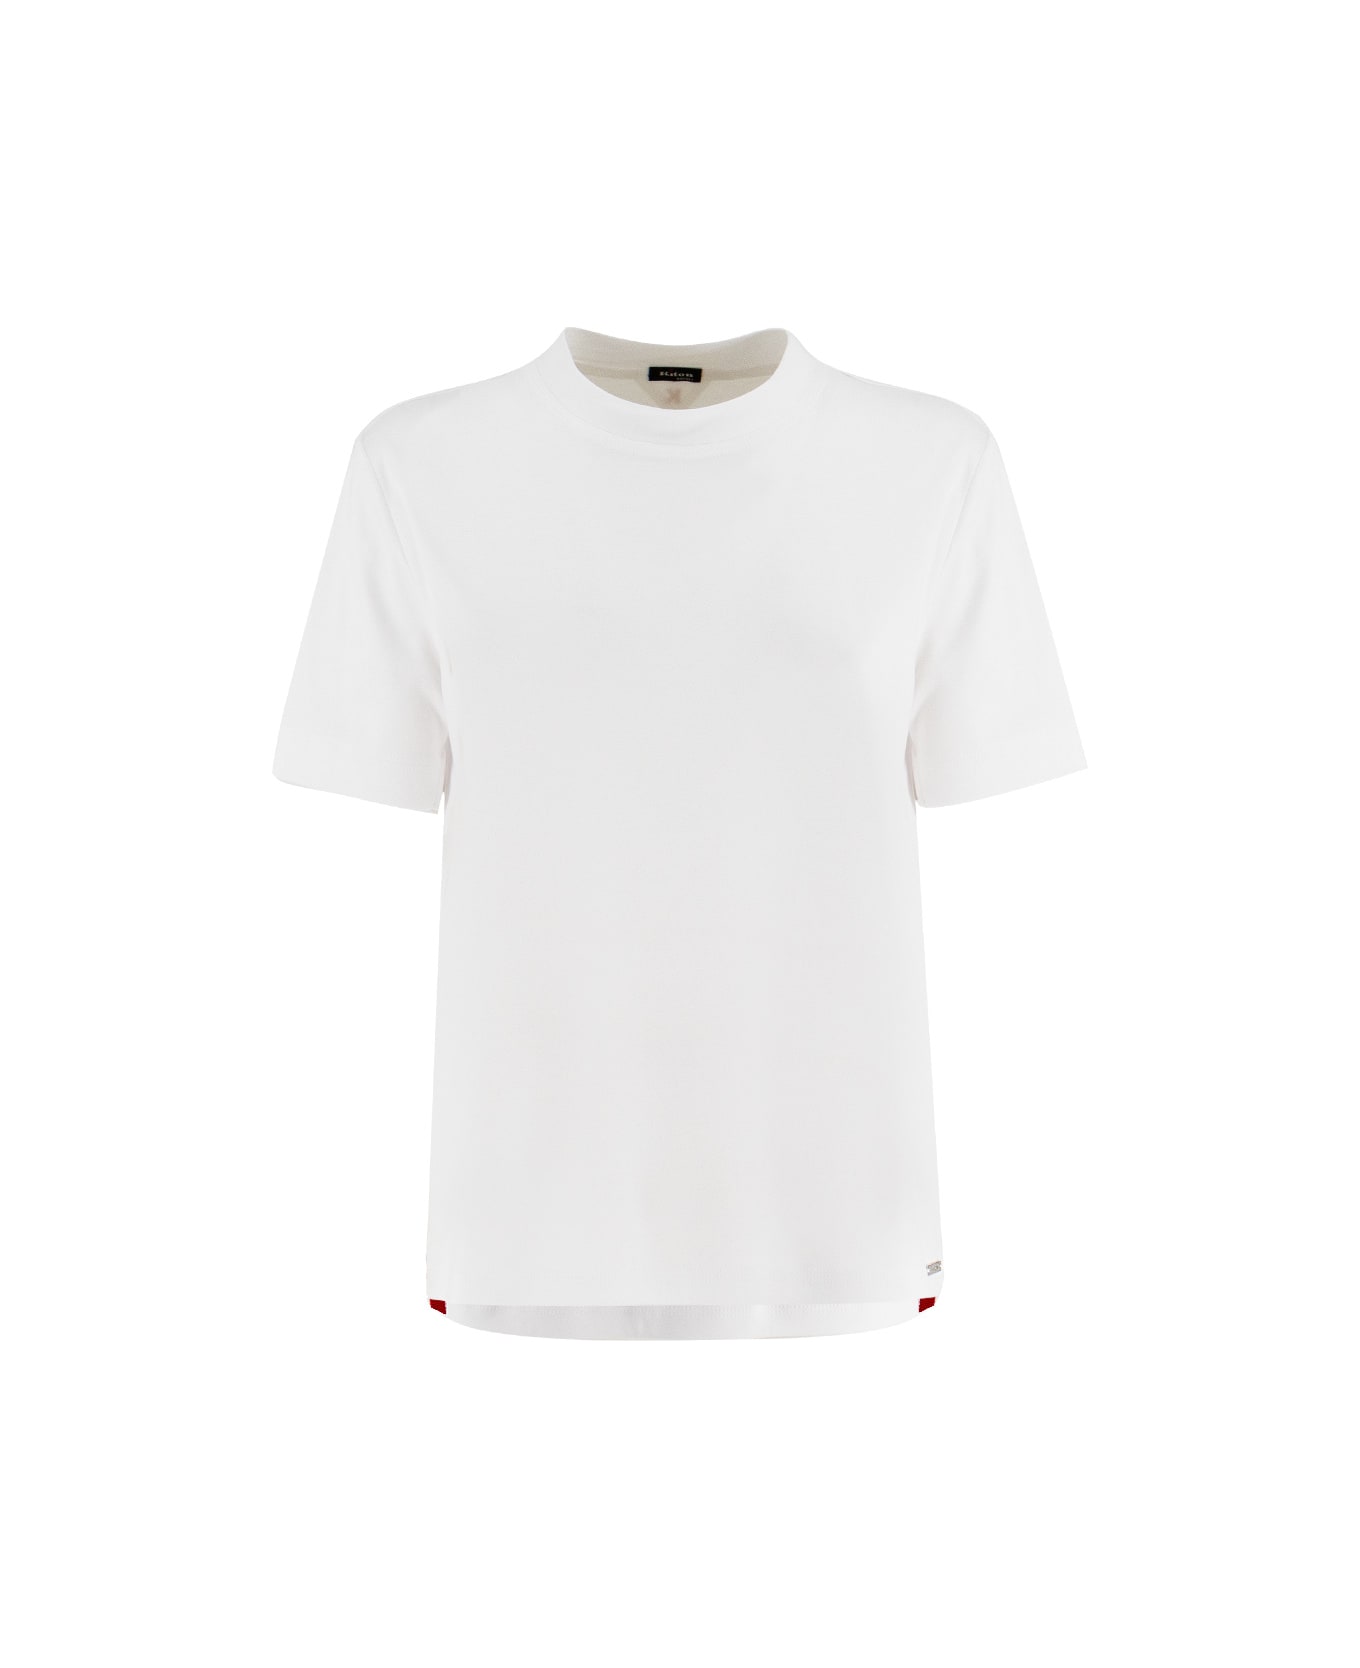 Kiton T-shirt - WHITE Tシャツ